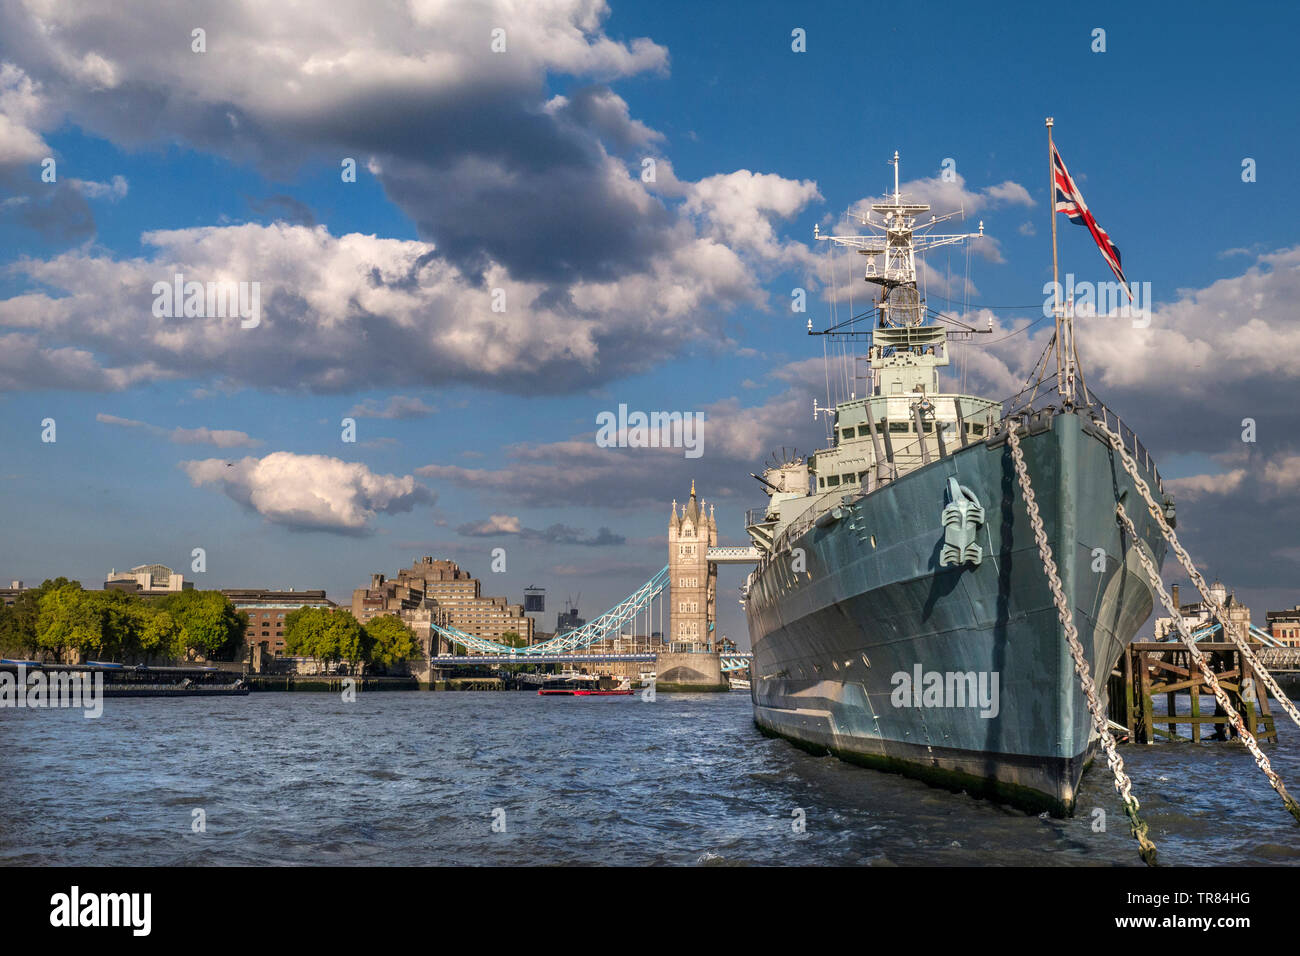 HMS Belfast, buque que enarbole la bandera Union Jack, amarrado en el río Támesis, en horas de la tarde la luz del sol, con el Tower Bridge y la torre detrás del Hotel London SE1 Foto de stock